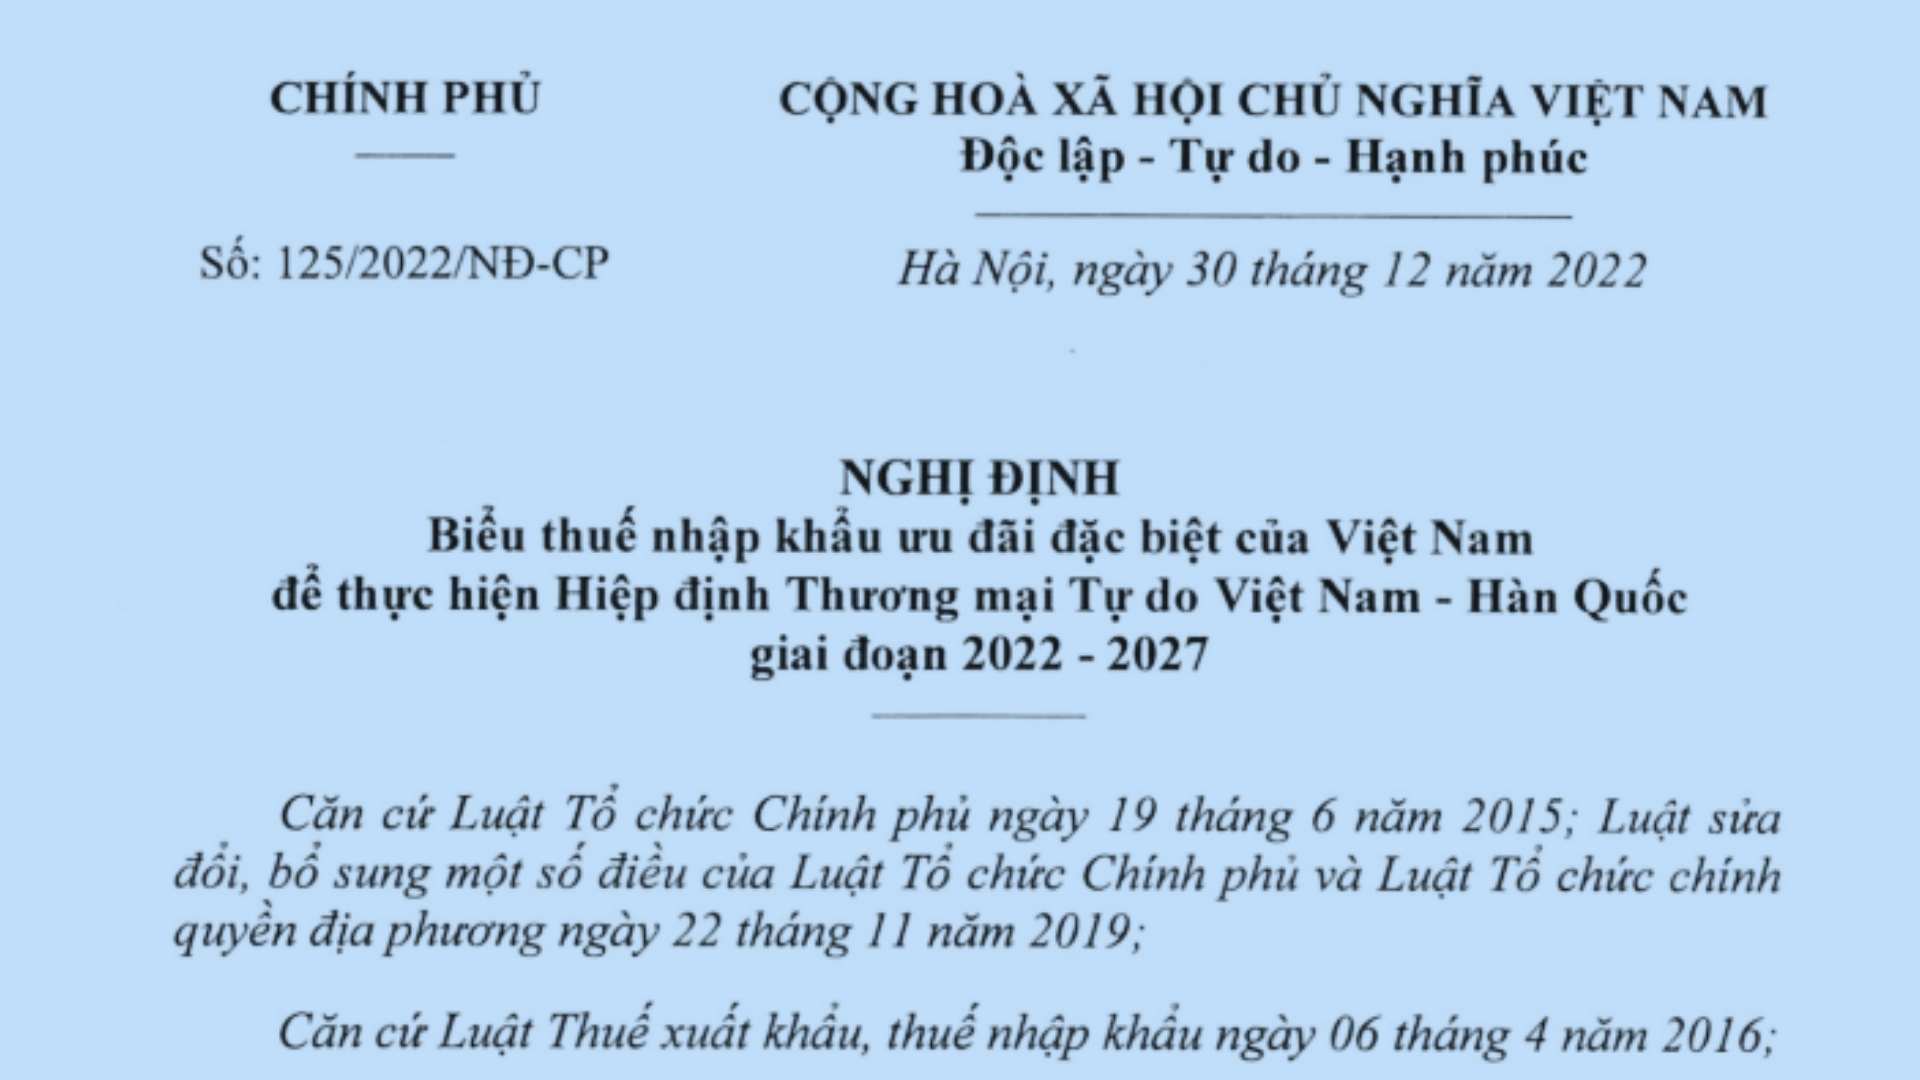 Biểu thuế nhập khẩu ưu đãi đặc biệt Việt Nam Hàn Quốc